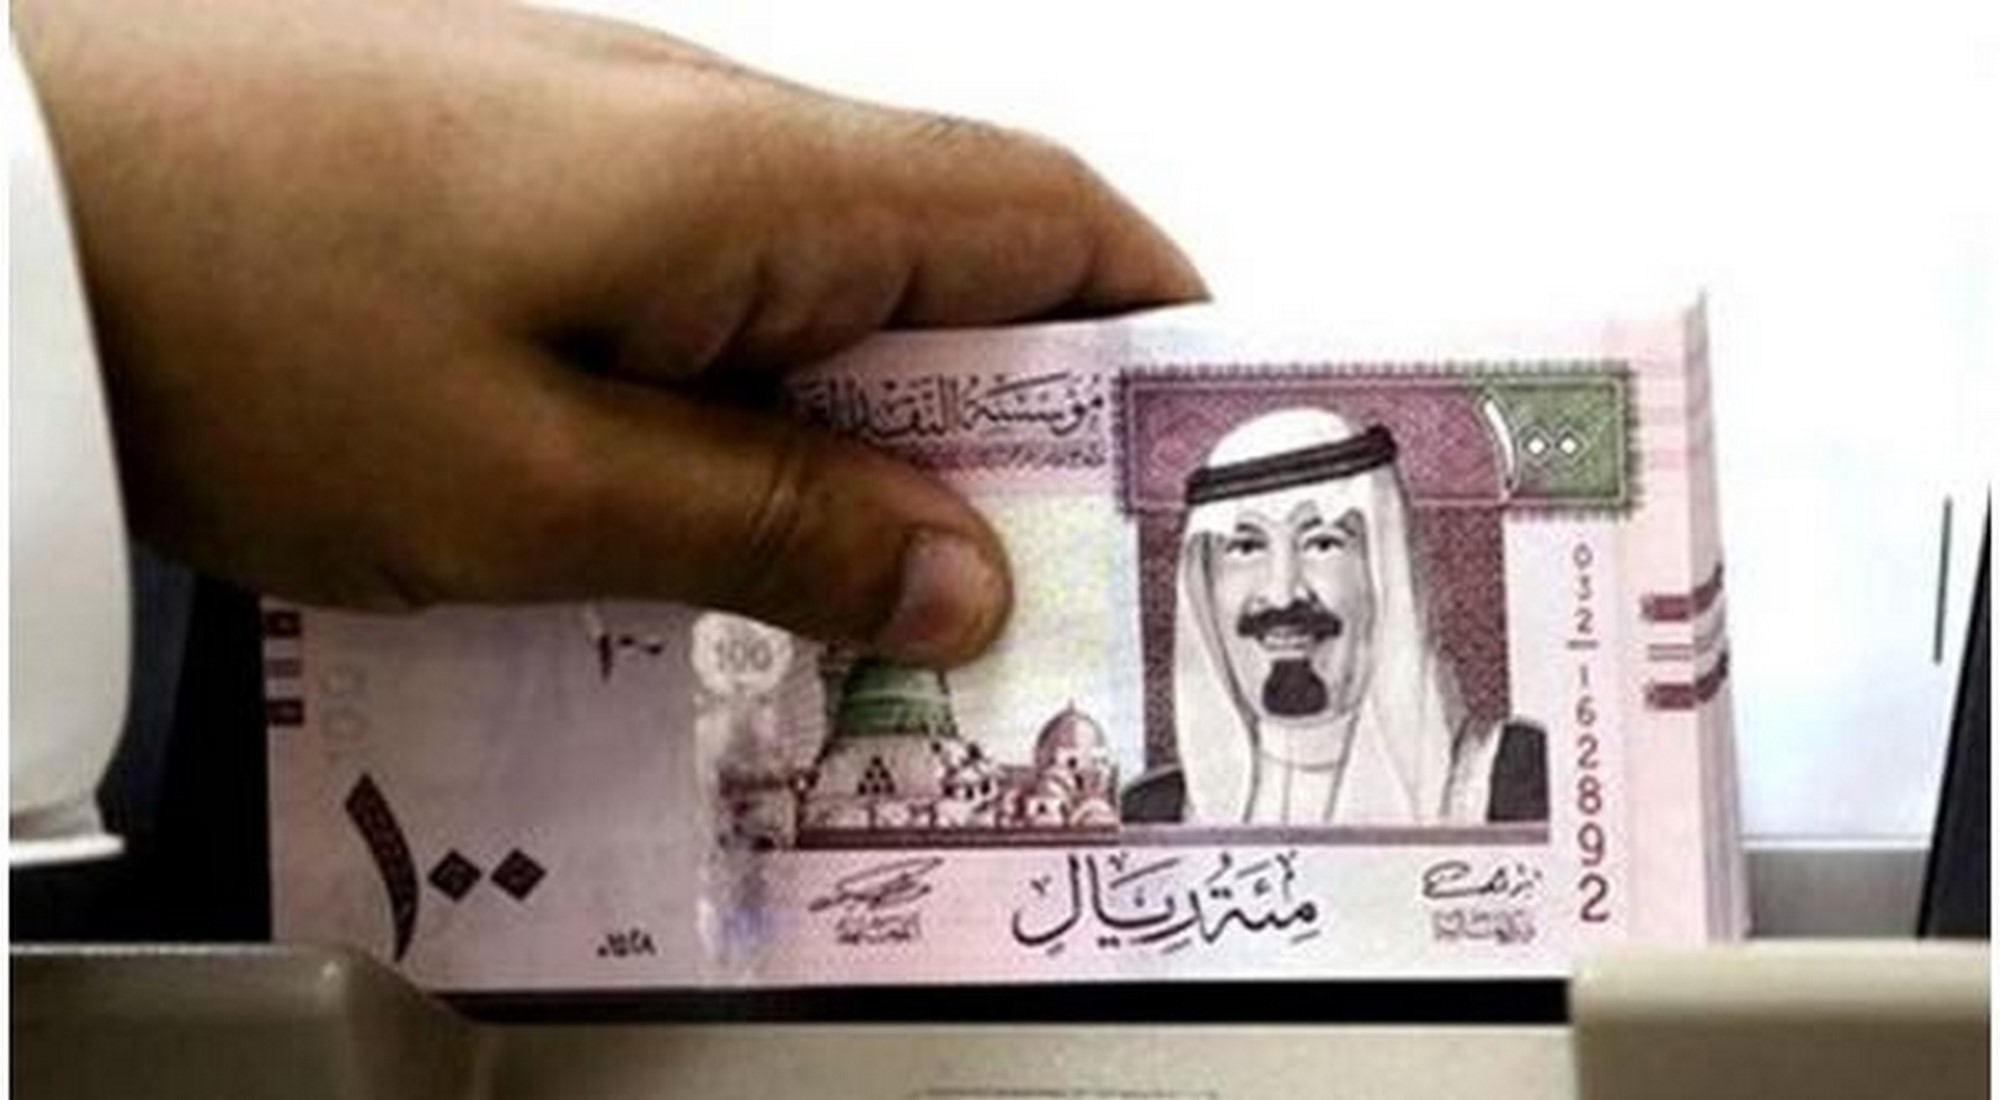 سعر الريال السعودي اليوم الاثنين 27 1 2020 في البنوك المختلفة